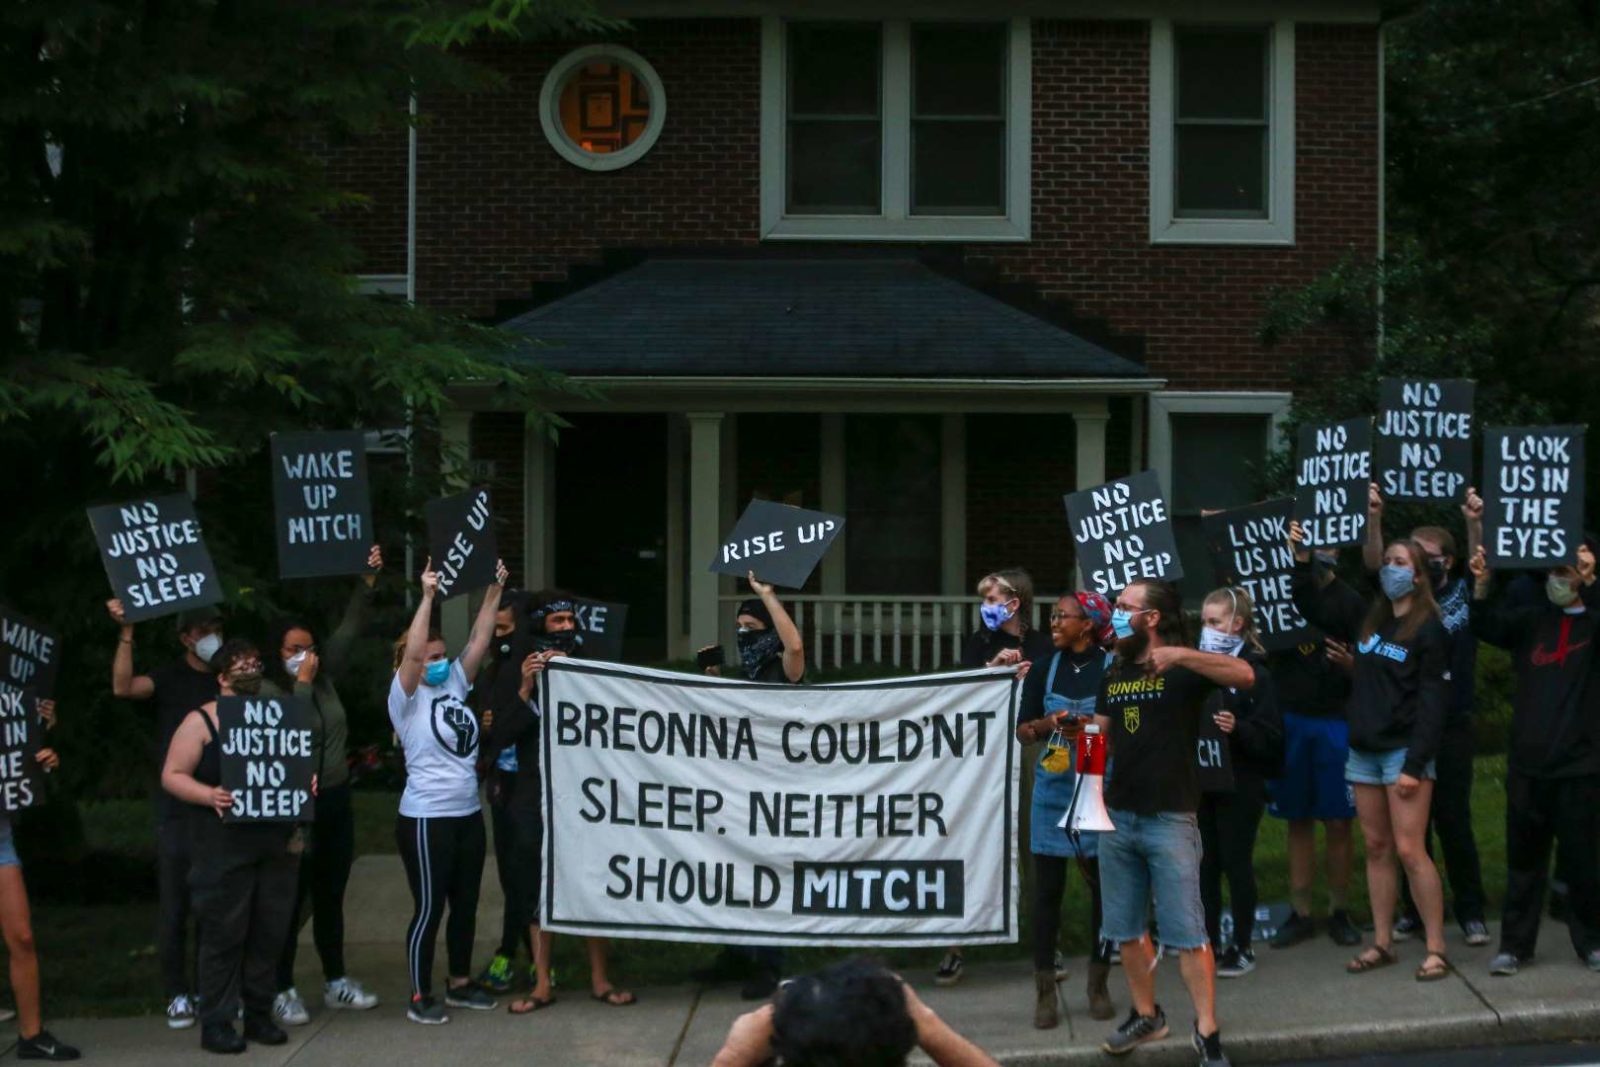 Gli attivisti di Sunrise manifestano davanti alla casa KY di Mitch McConnell, con in mano un grande cartello che dice "Breonna non riusciva a dormire. Neanche Mitch dovrebbe".